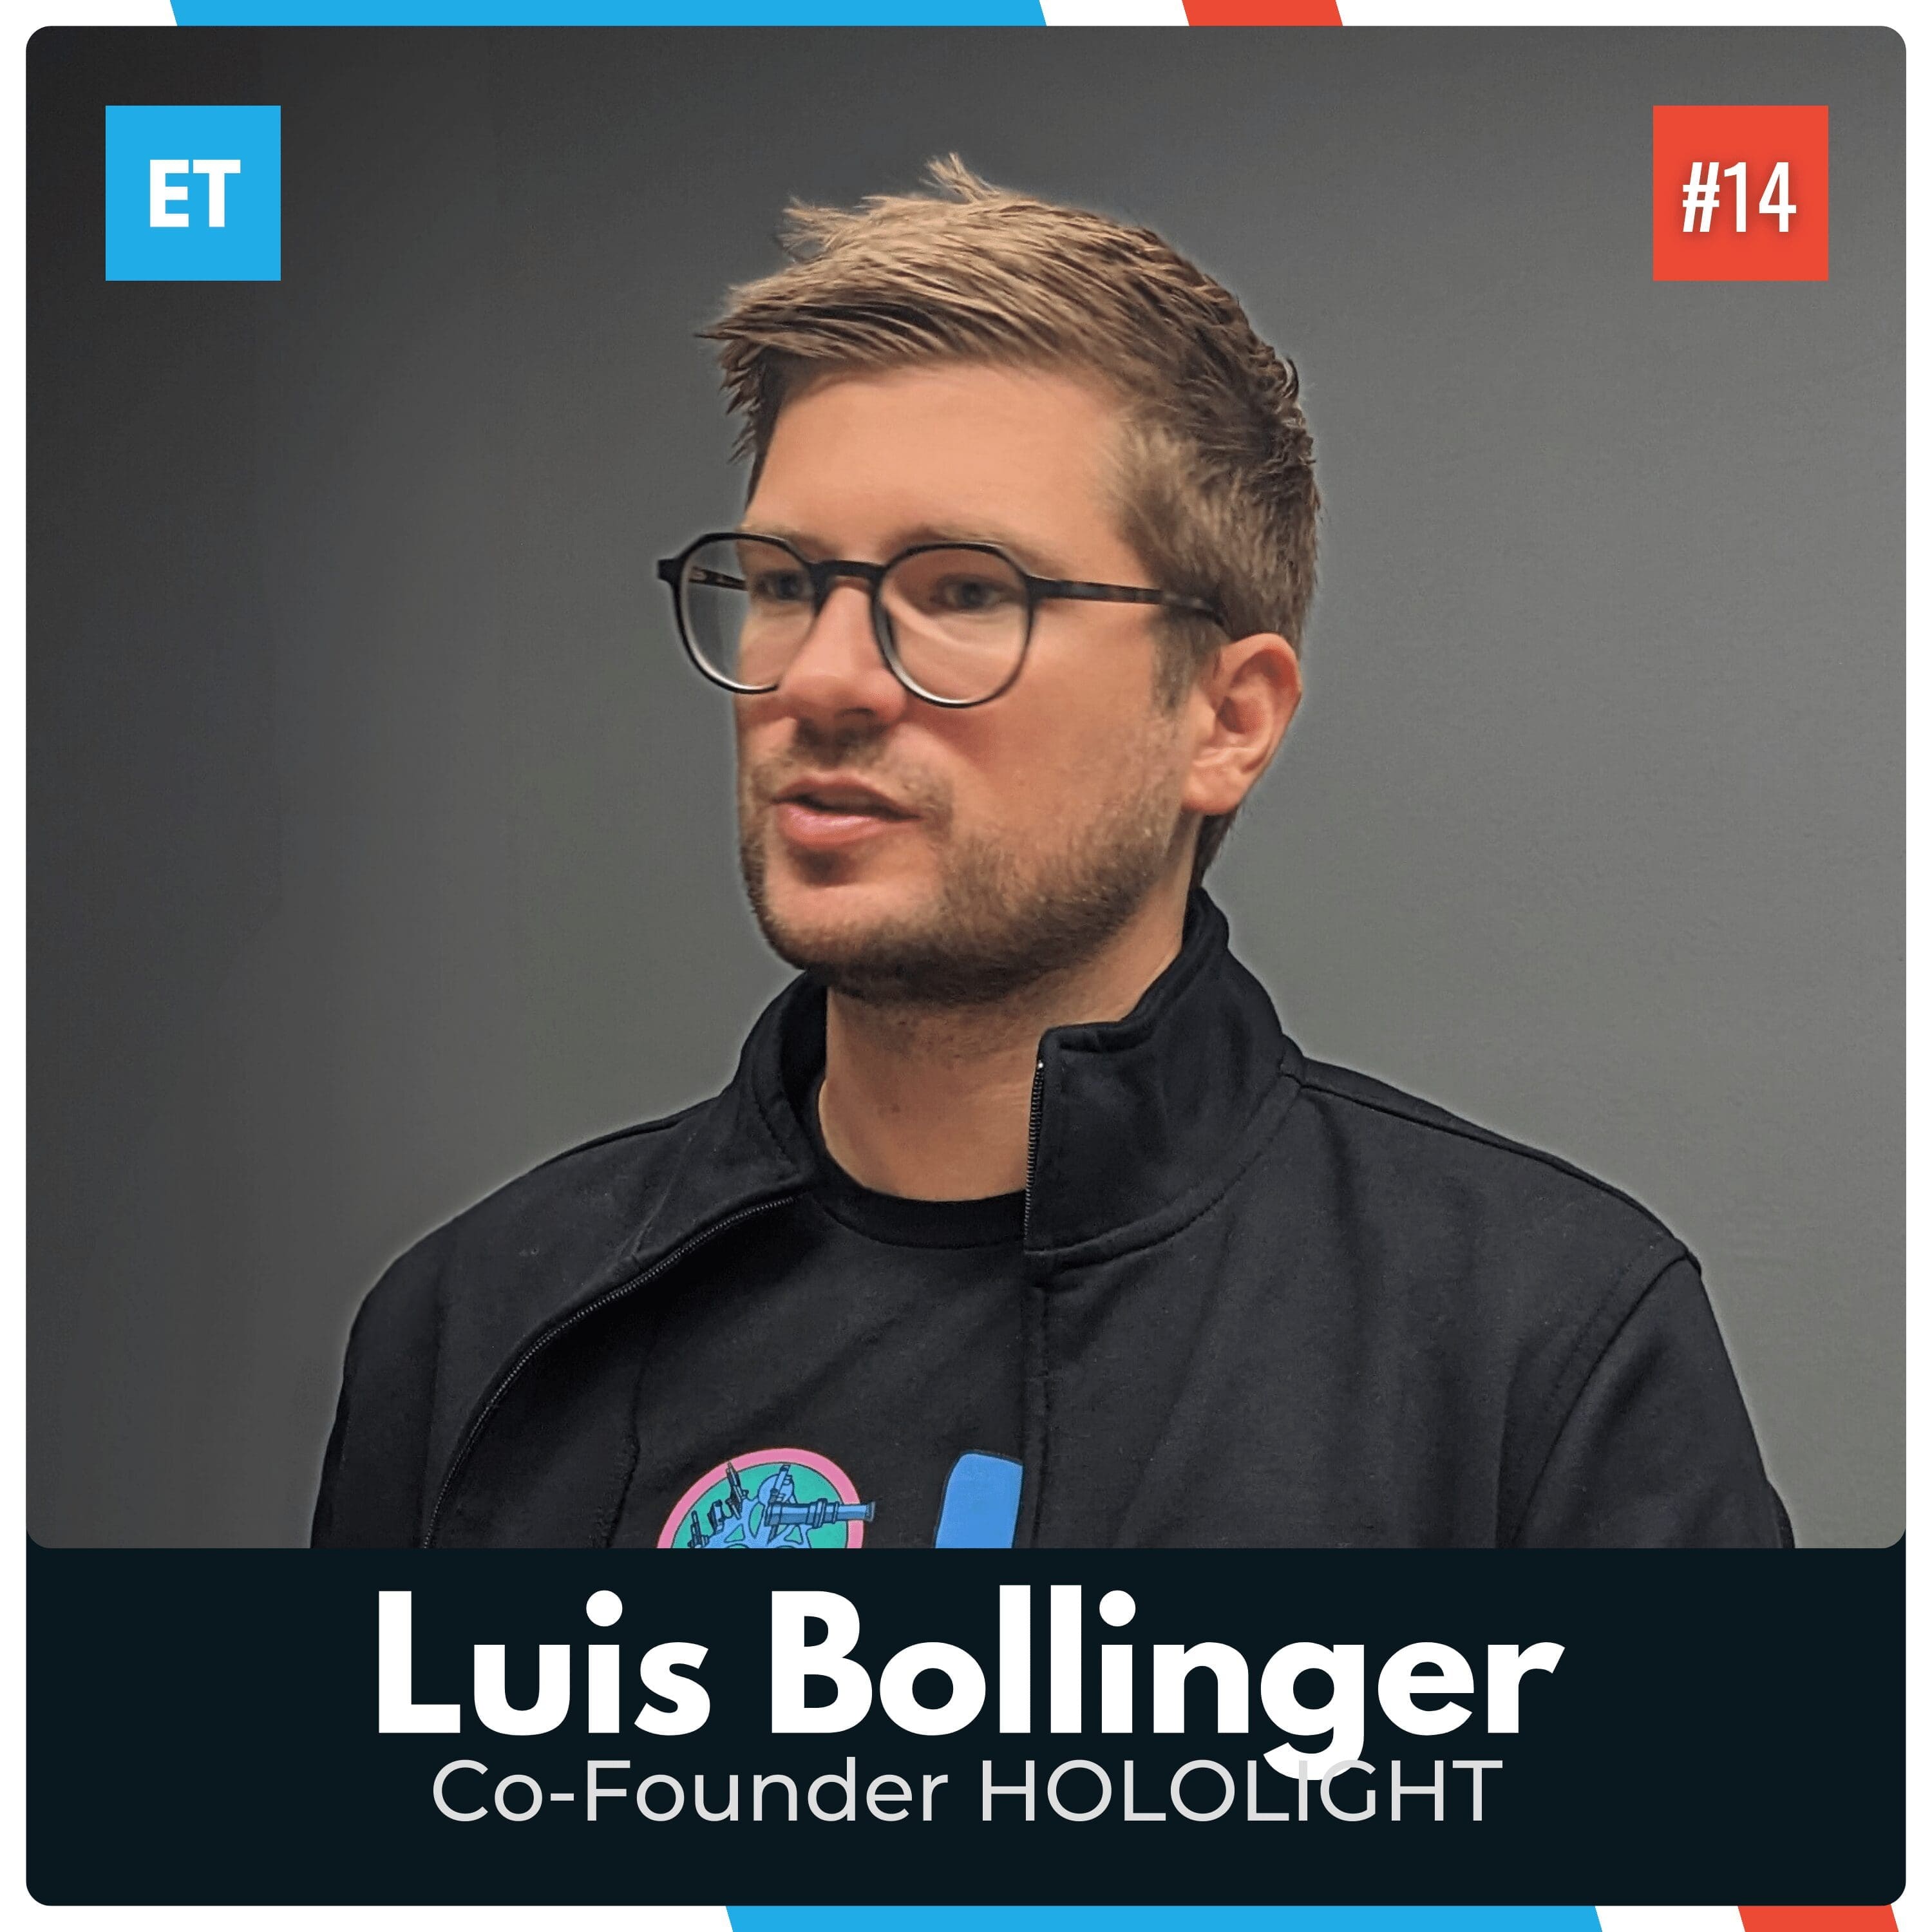 Luis Bollinger spricht über immersive Technologien und warum sie die nächste industrielle Revolution zu uns bringen werden